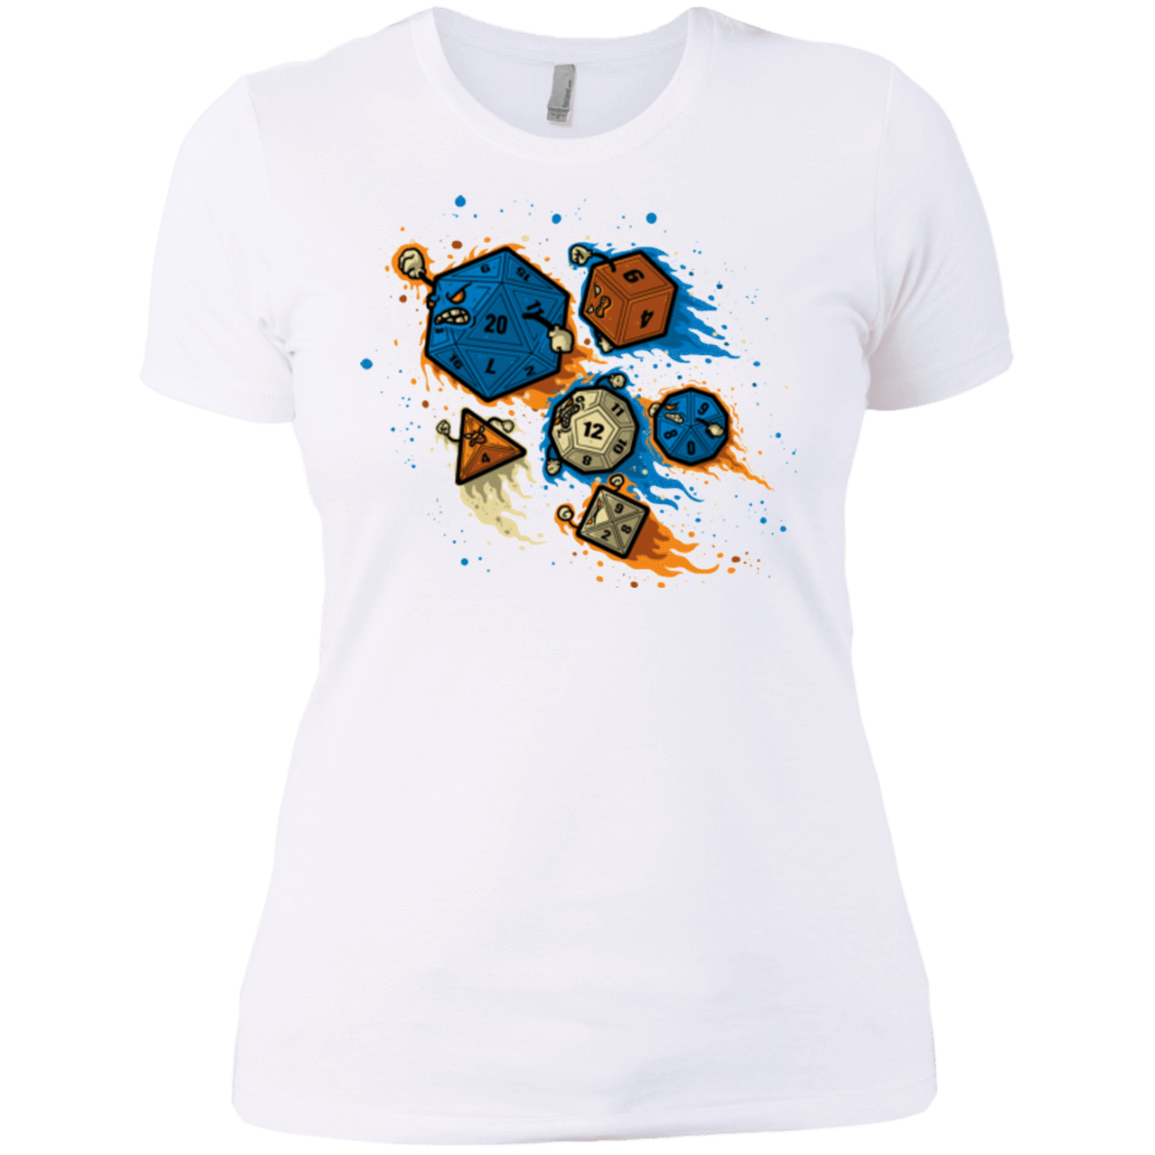 T-Shirts White / X-Small RPG UNITED REMIX Women's Premium T-Shirt